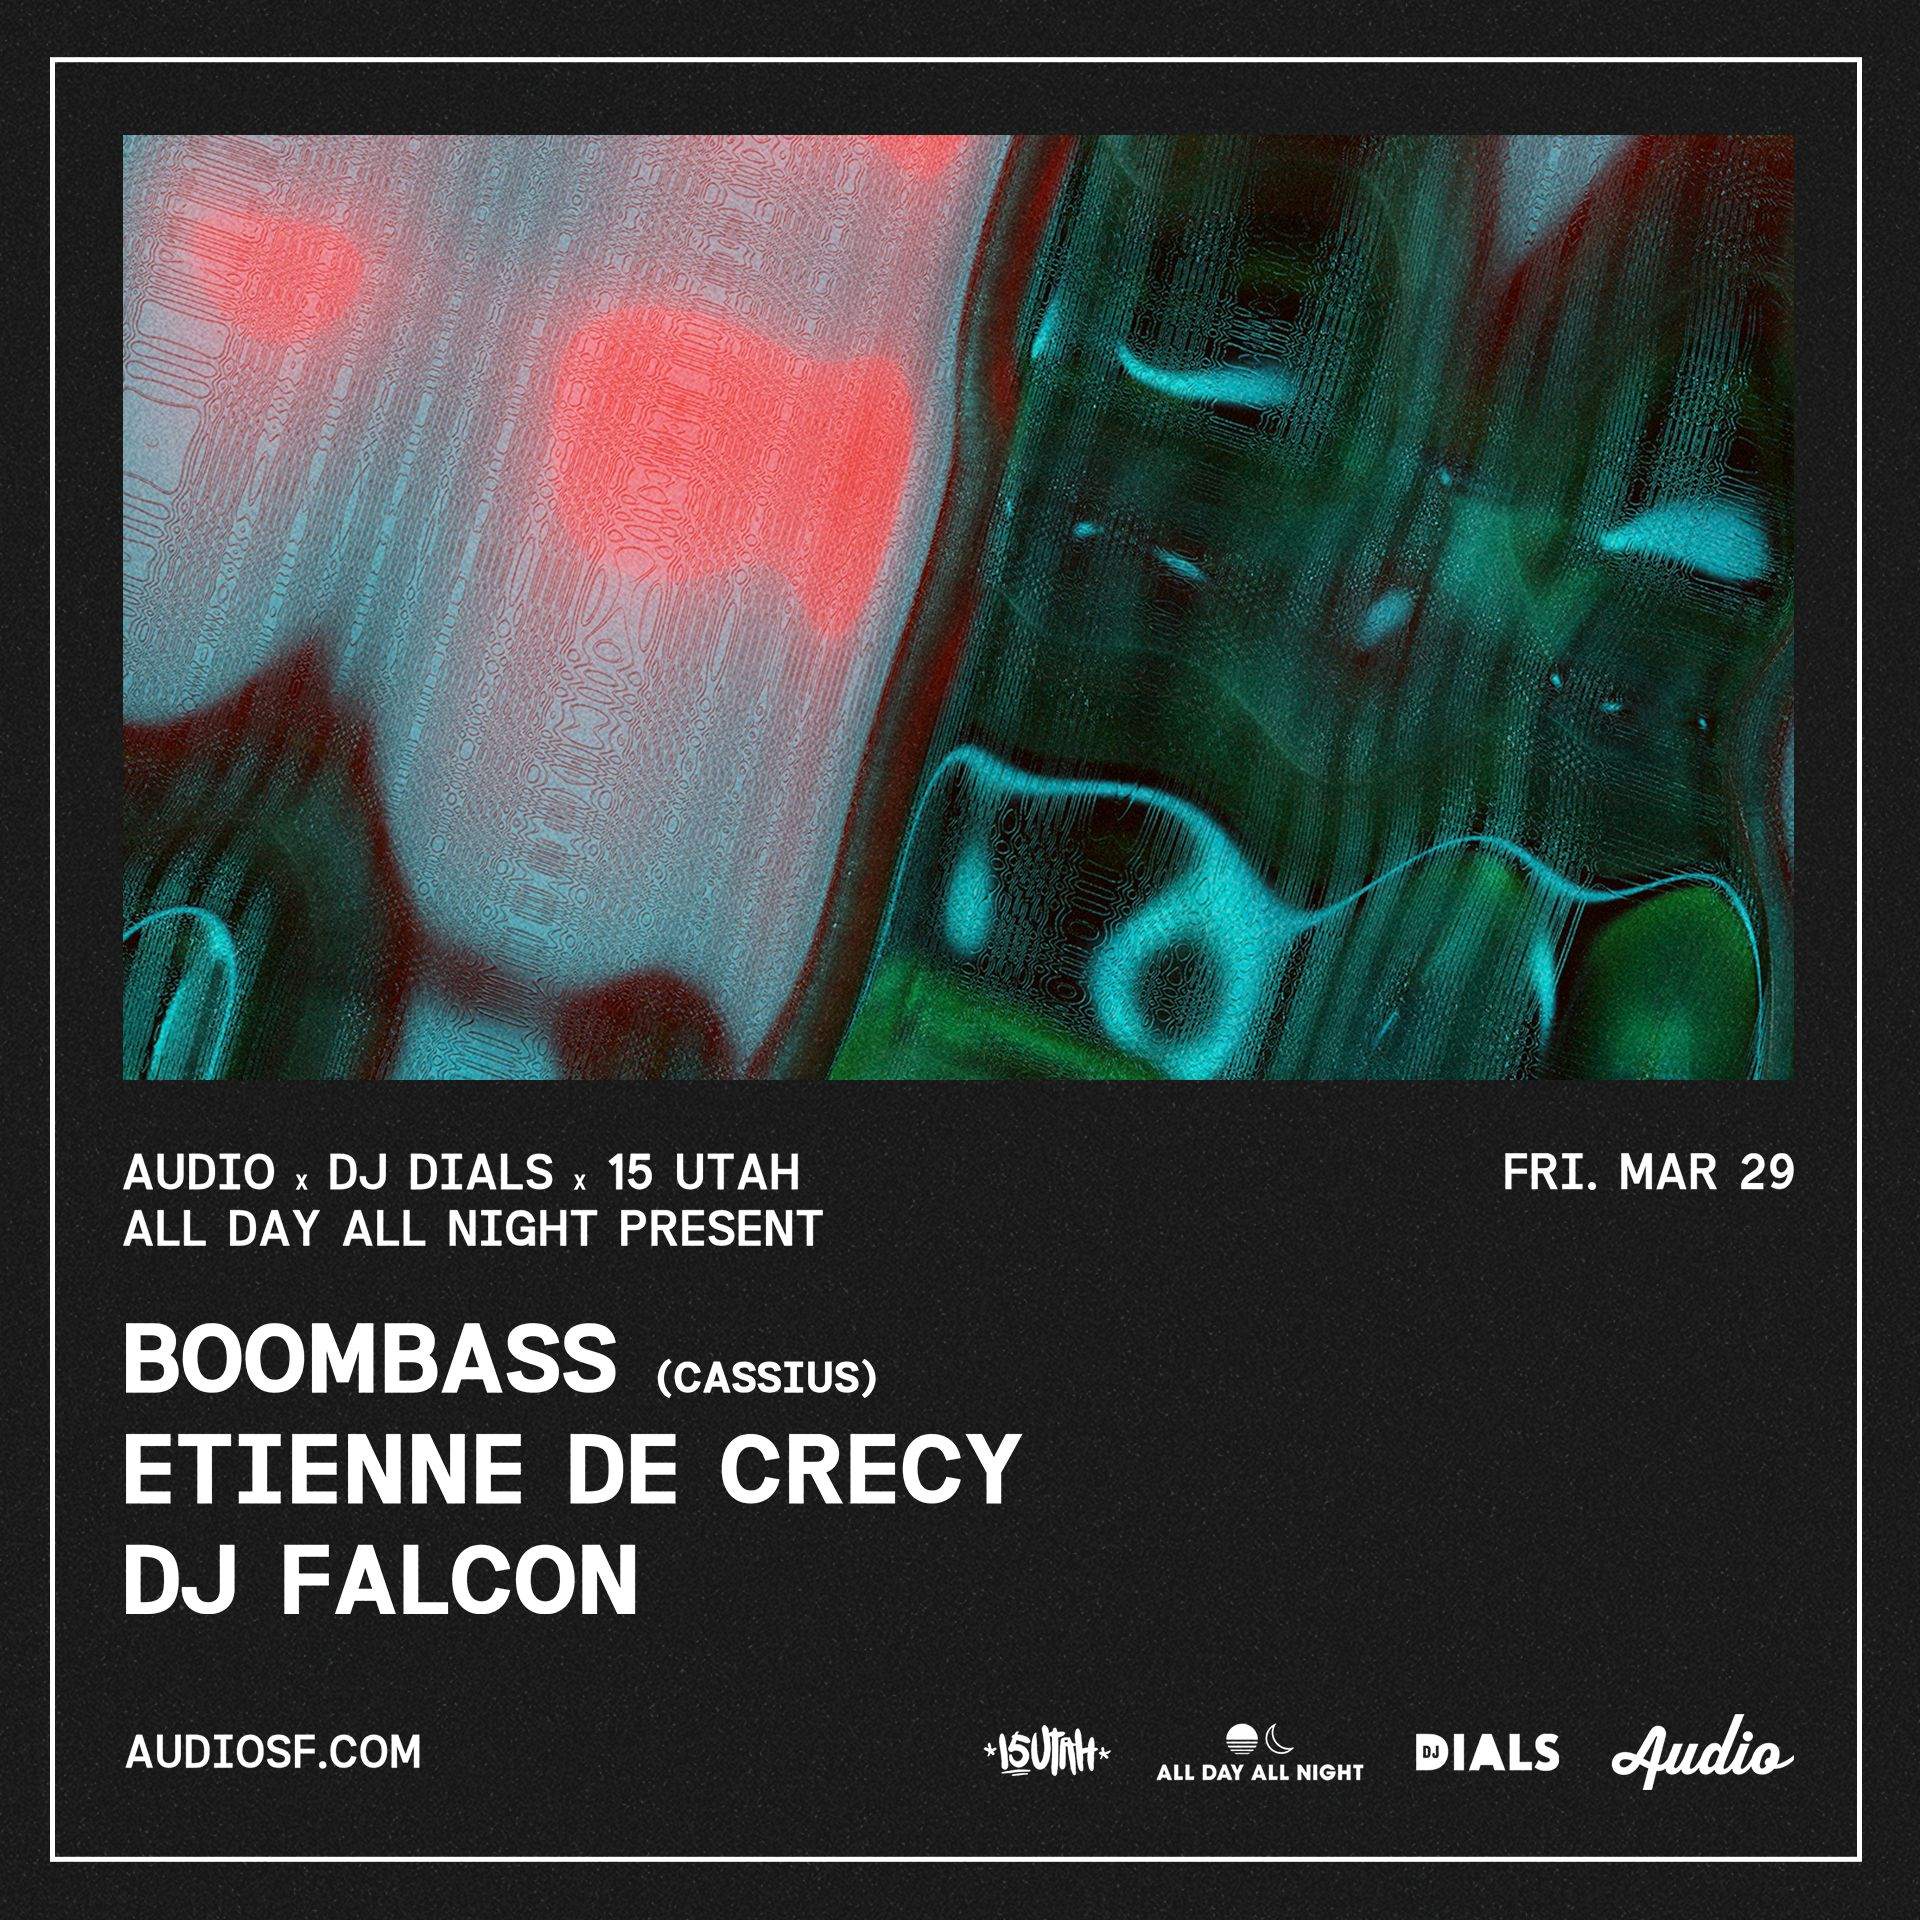 Boombass + Etienne De Crecy + DJ Falcon at Audio - フライヤー表